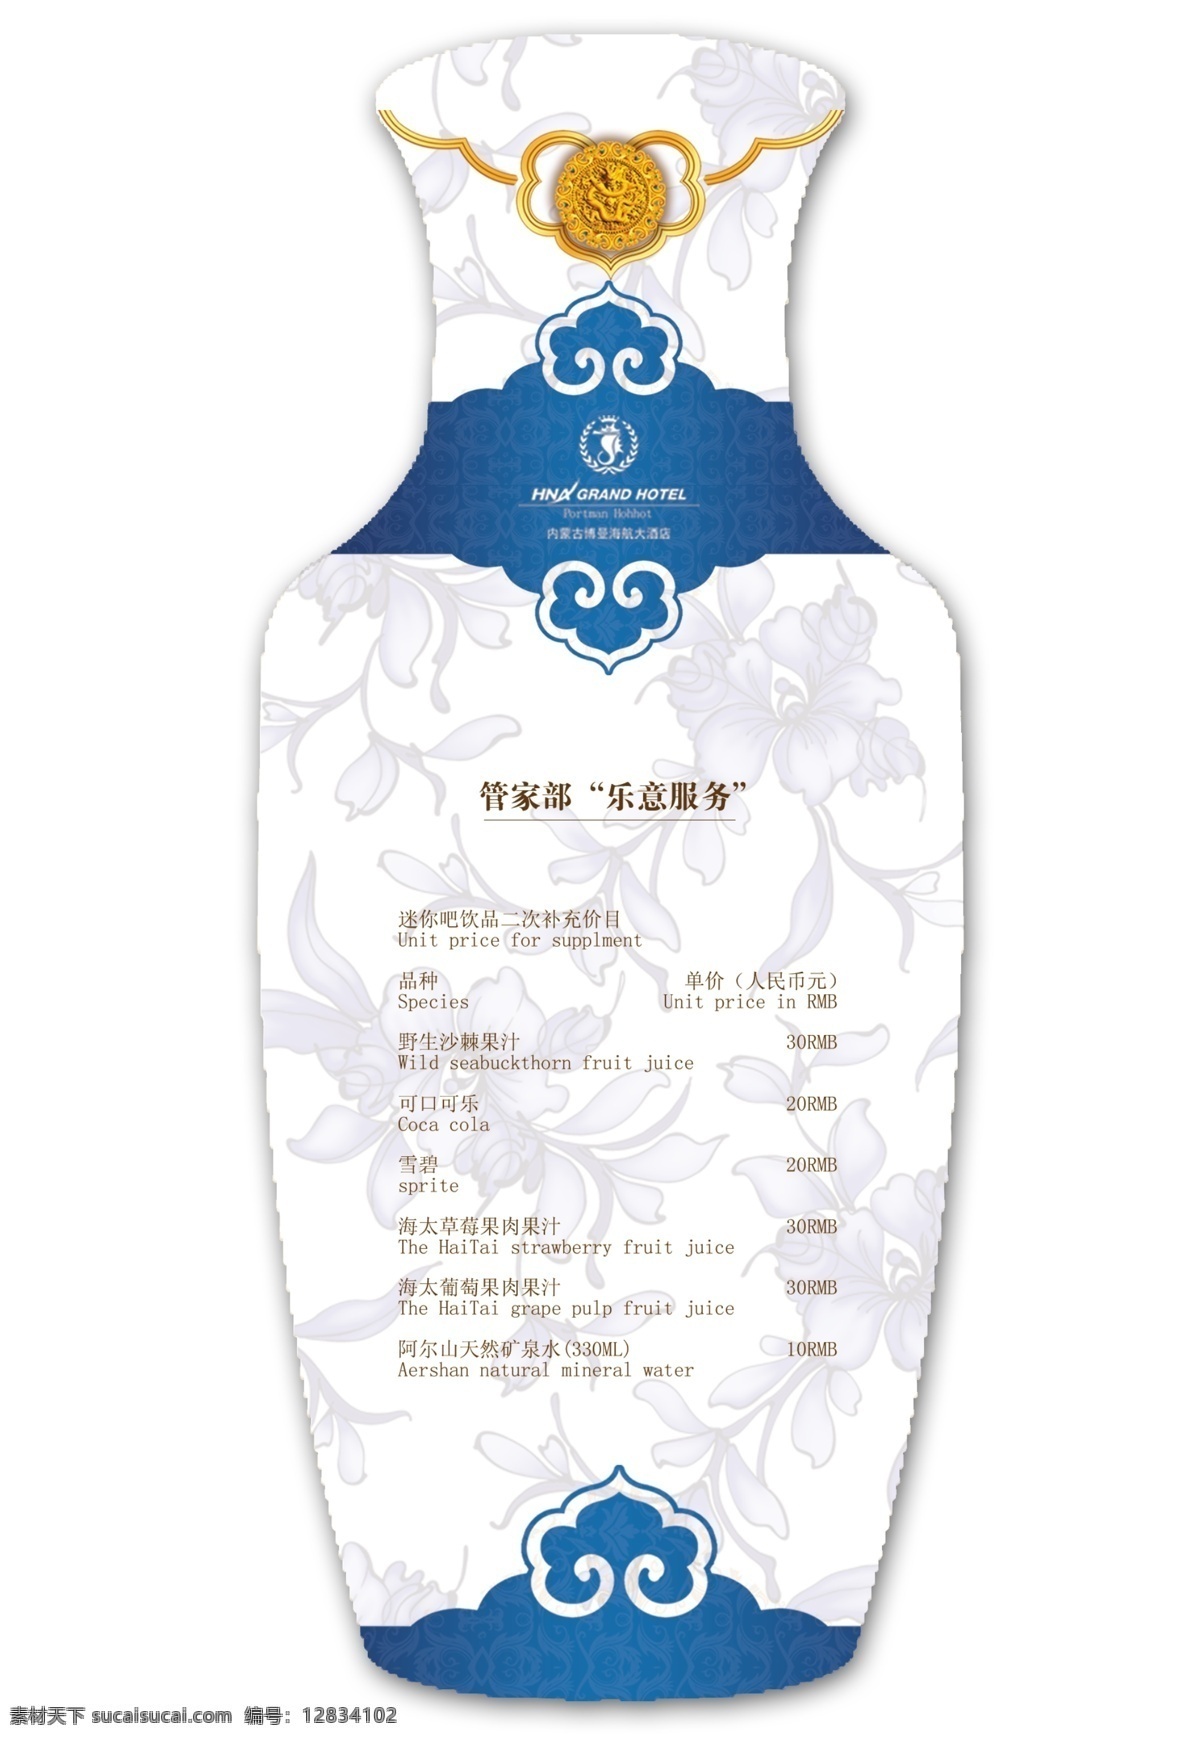 青花 瓷瓶 平面图 瓶子包装 青花瓷 蒙古族花纹 花纹 包装设计 广告设计模板 源文件